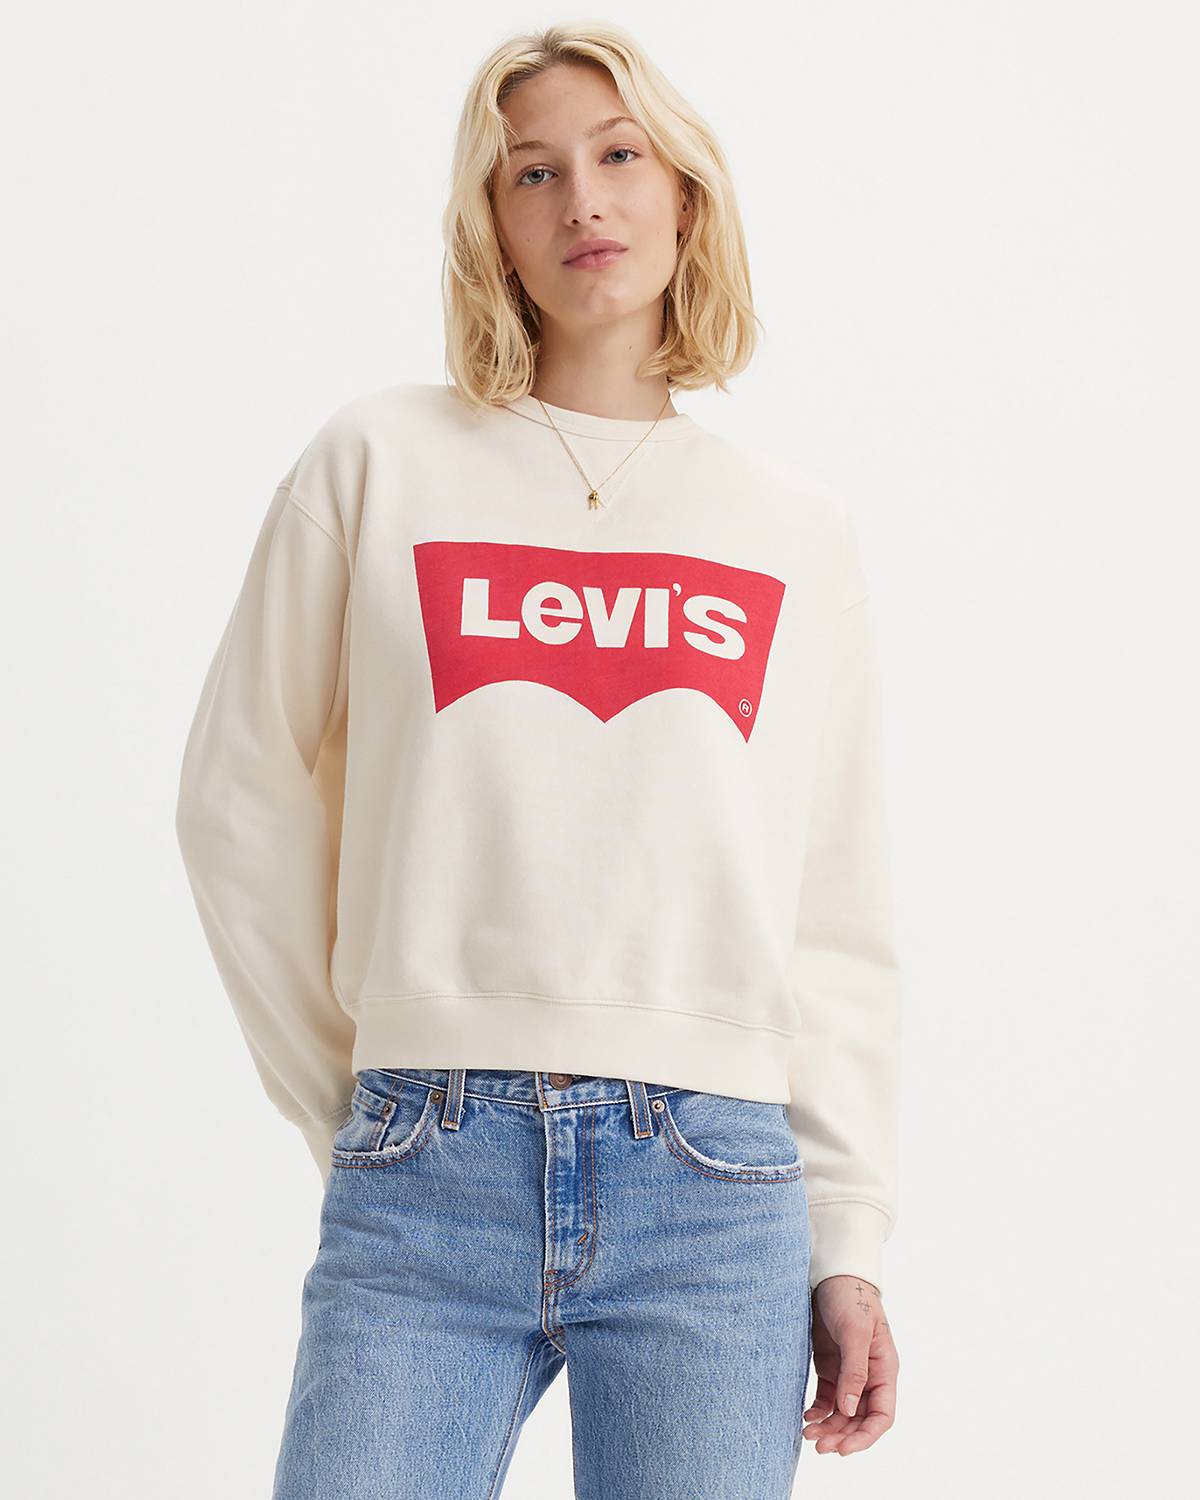 Levi's® Clothing On Sale - Shop Discount Denim Clothes